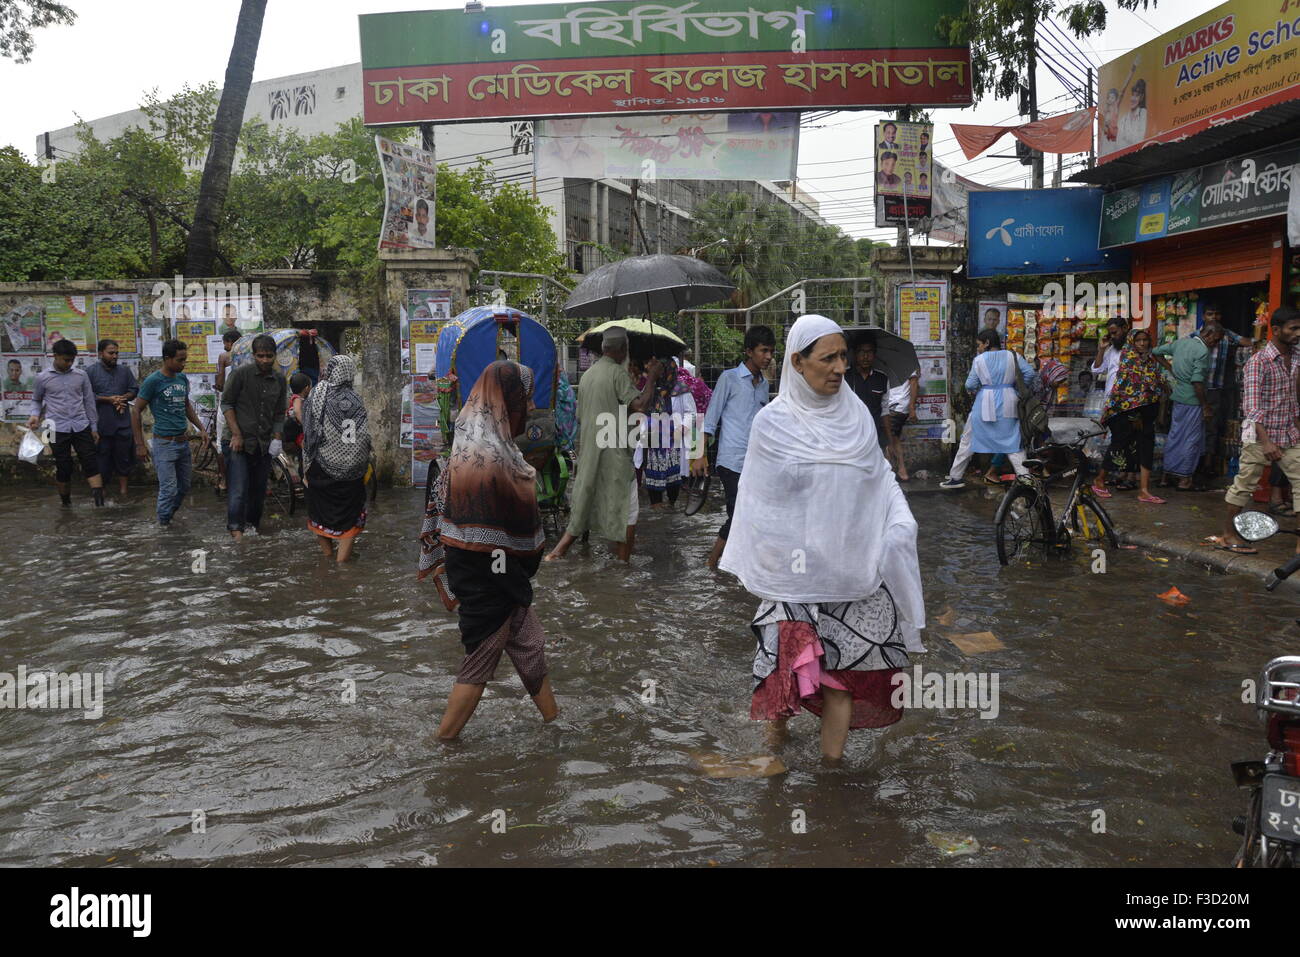 Dhaka, Bangladesh. 05Th Oct, 2015. Peuples autochtones se rendent à travers les rues engorgées de Dhaka Medical collage zone Hospital à Dhaka, au Bangladesh. Le 5 octobre 2015, de fortes pluies diluviennes ont causé l'eau dans la plupart des domaines de la ville de Dhaka, Bangladesh. Les routes étaient submergées ce qui rend les déplacements lents et dangereux. Le 5 octobre 2015 Crédit : Mamunur Rashid/Alamy Live News Banque D'Images